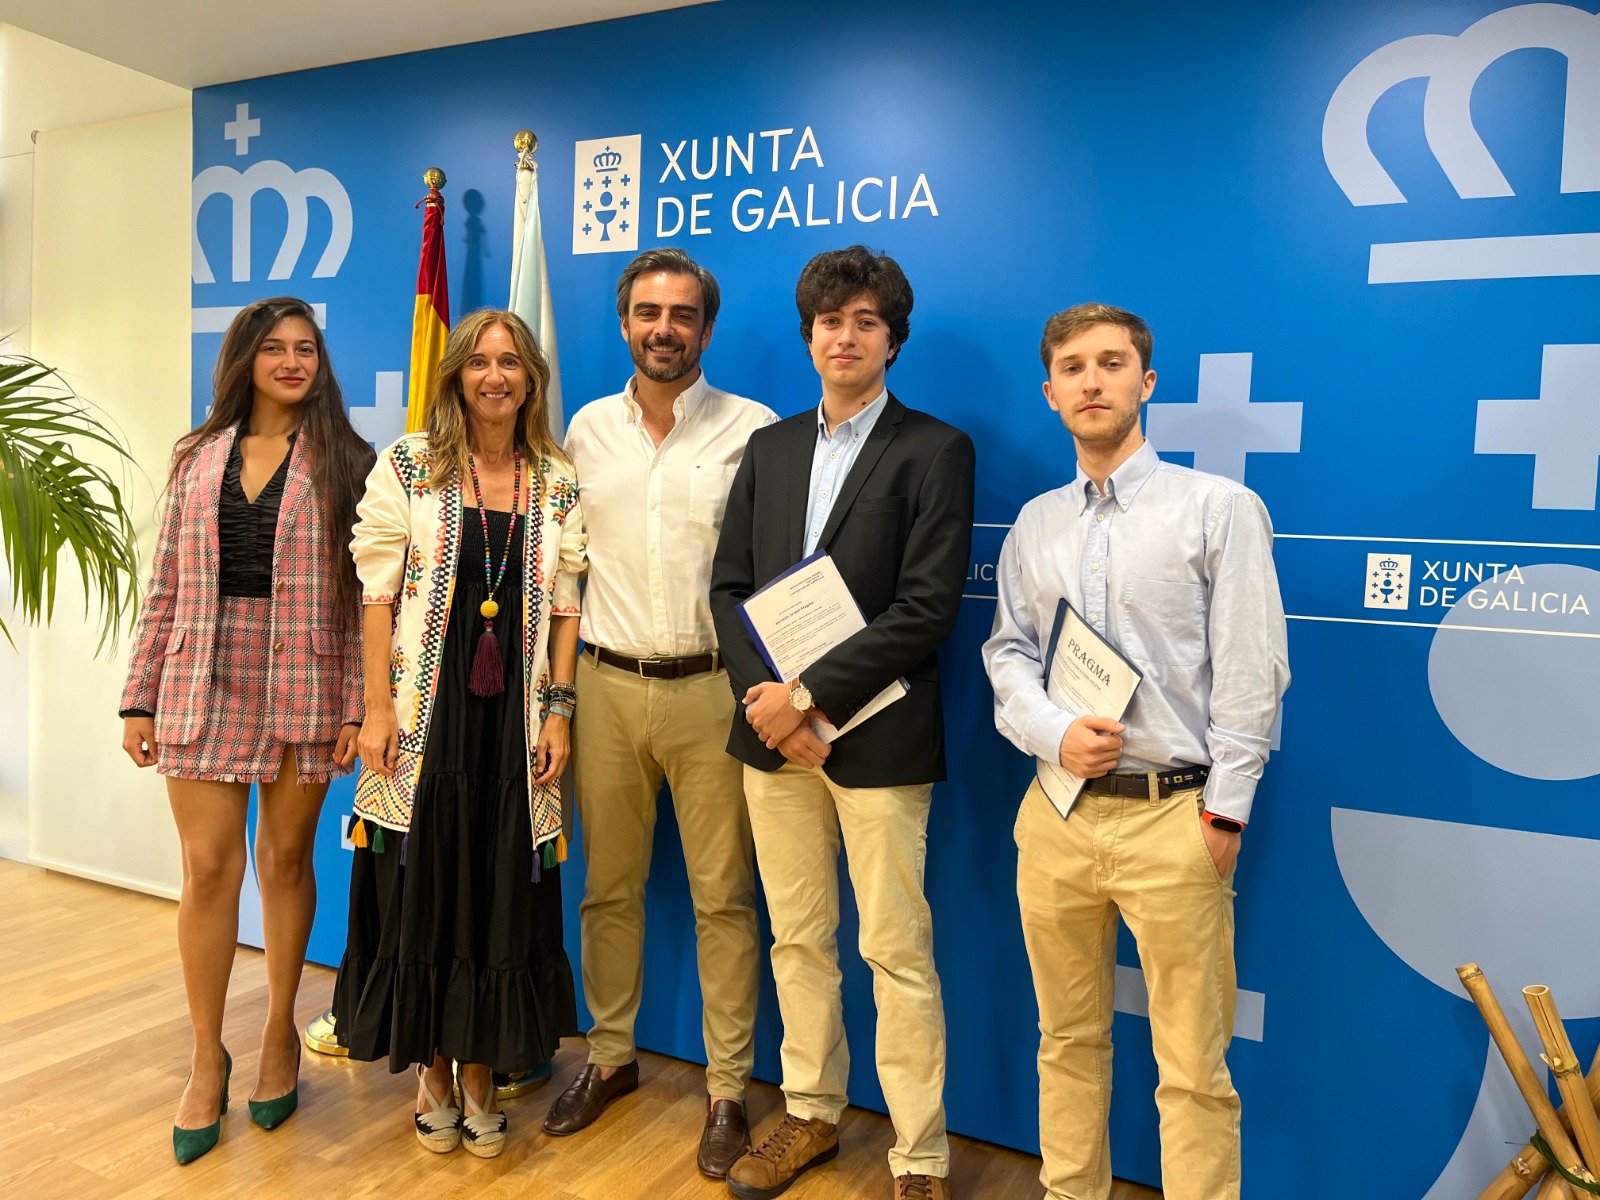 Es decir En marcha complejidad Pragma, una nueva asociación universitaria gallega para acercar la política  a los estudiantes